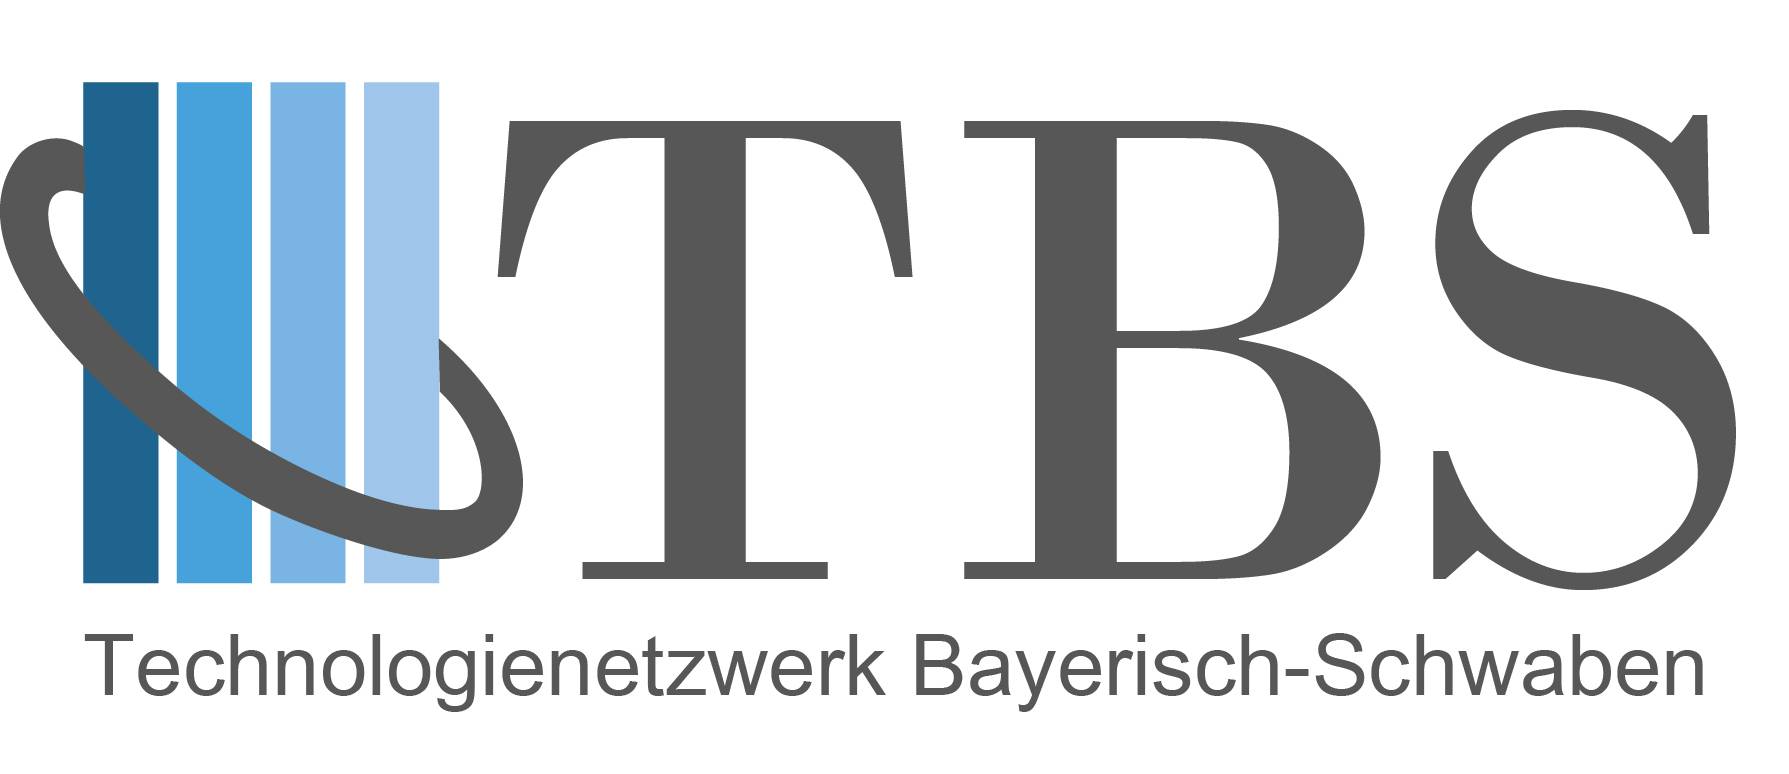 TBS: Technologienetzwerk Bayerisch-Schwaben